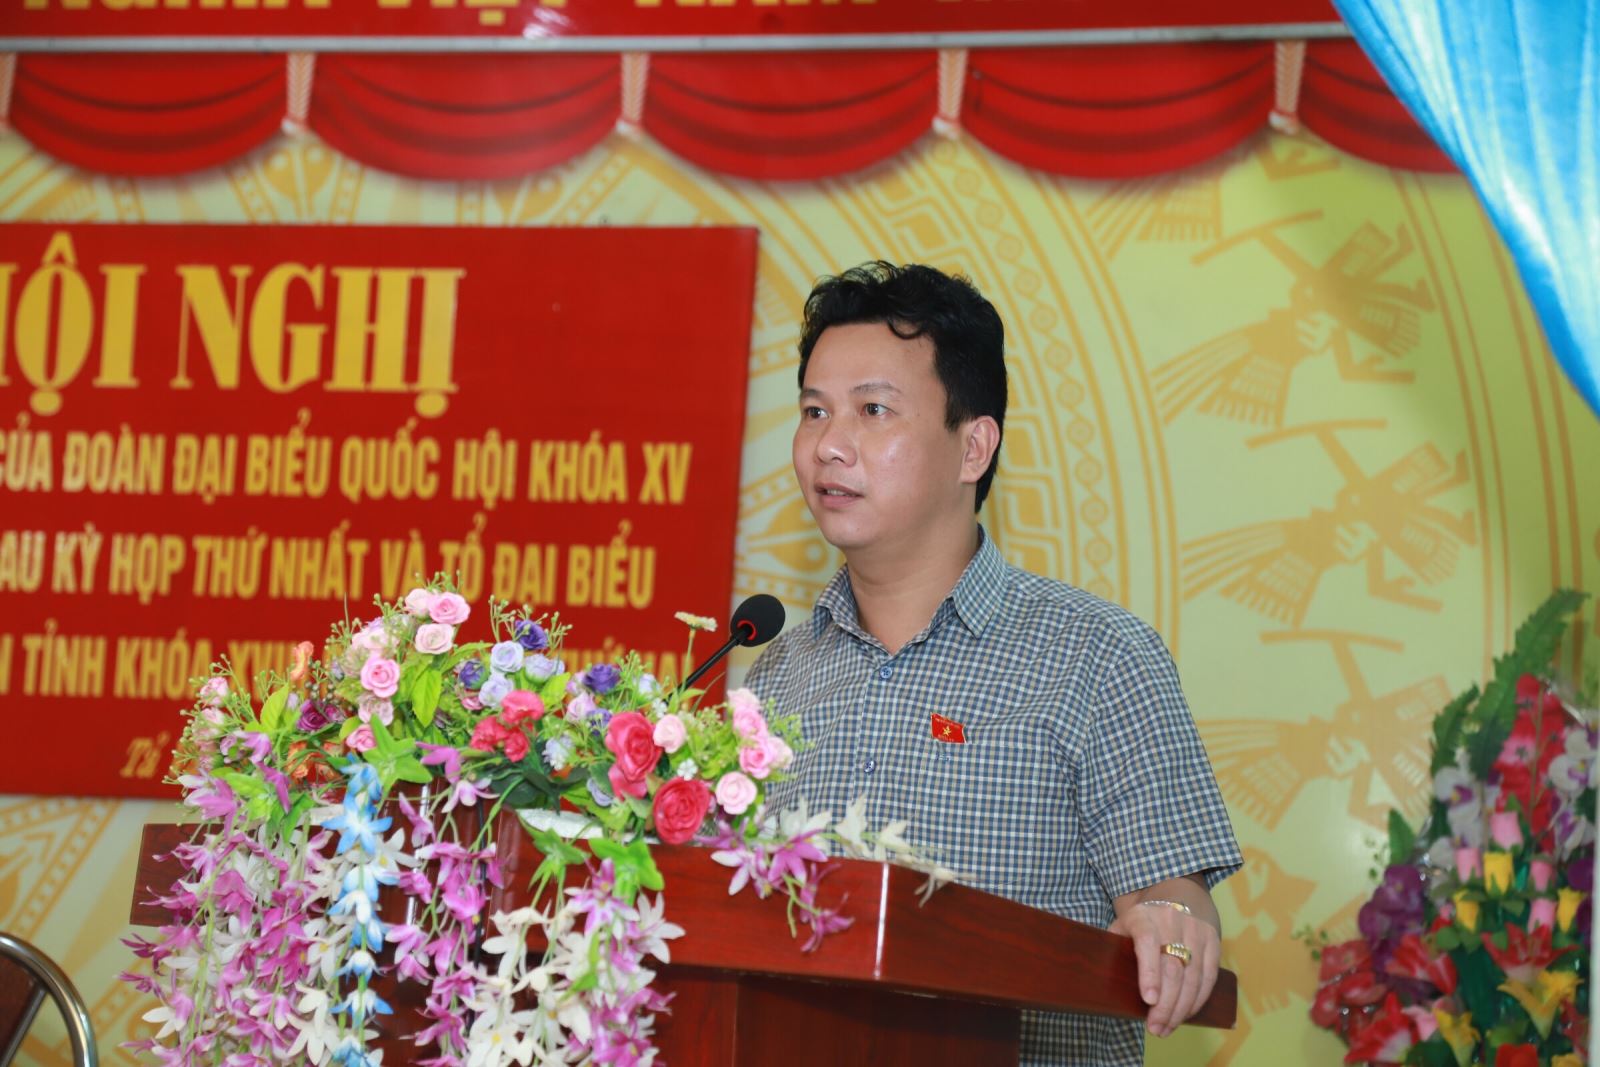 Bí thư Tỉnh ủy Đặng Quốc Khánh, Trưởng đoàn ĐBQH khóa XV của tỉnh phát biểu tại buổi tiếp xúc